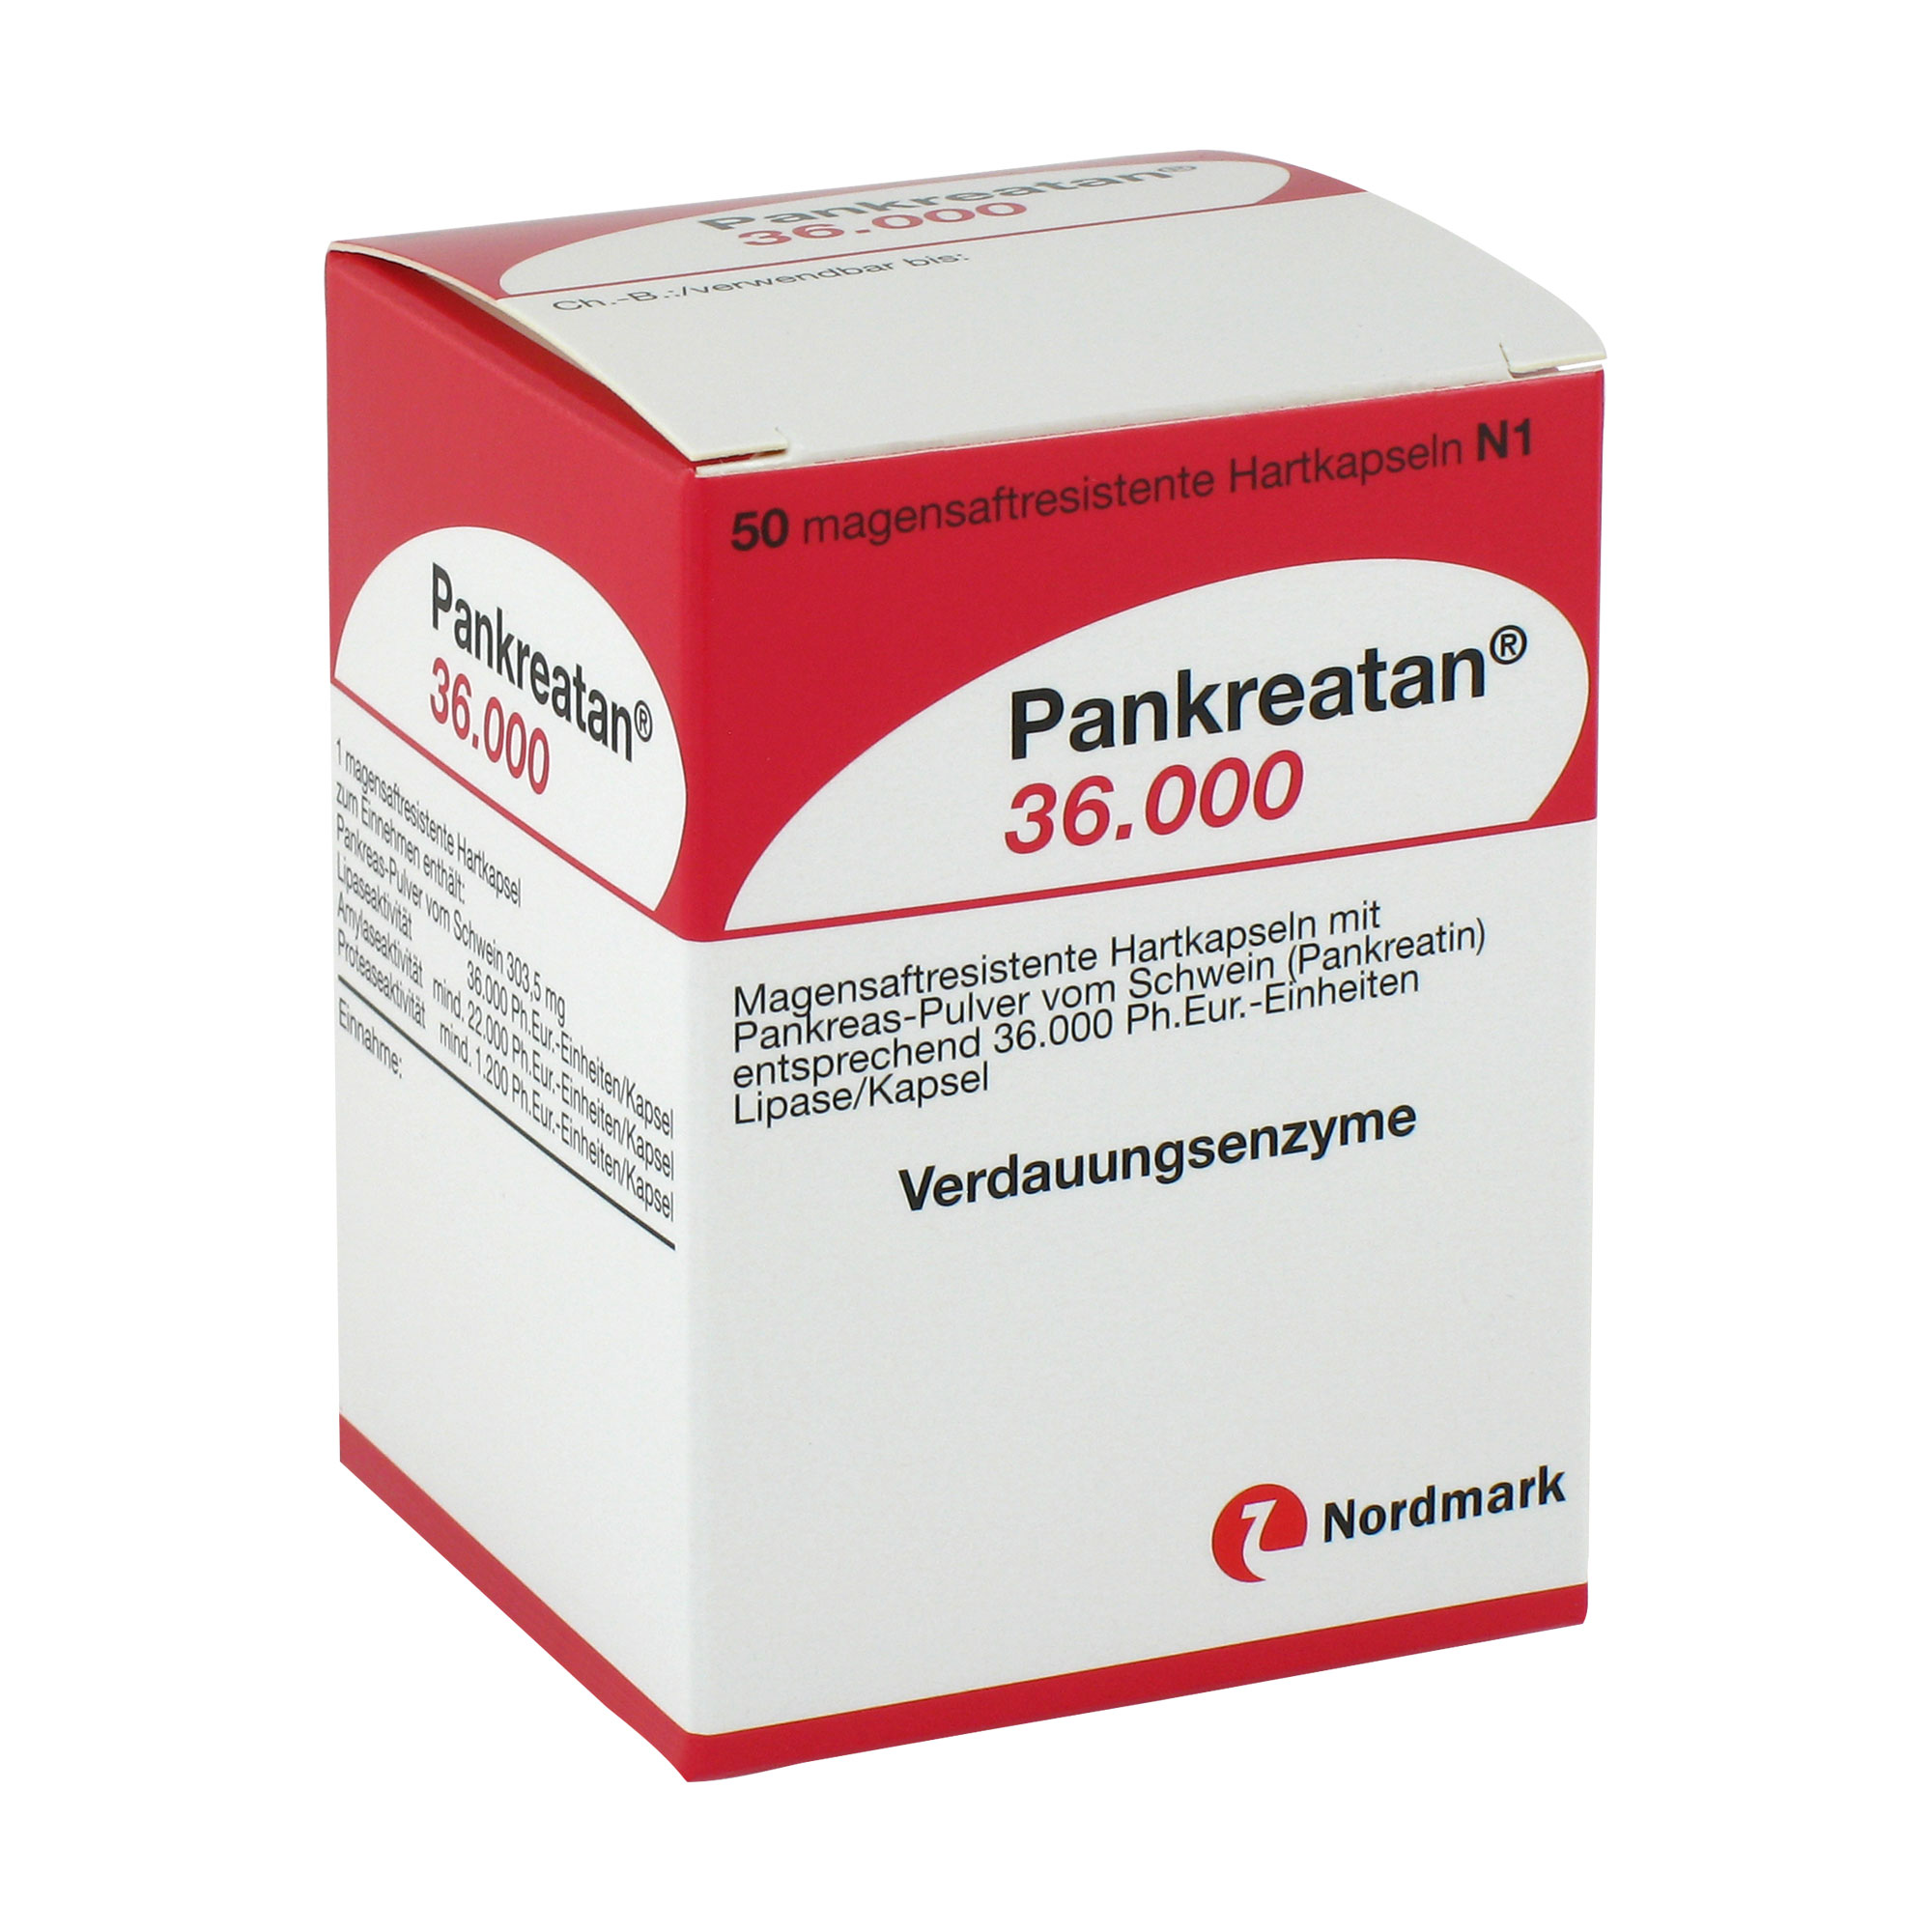 Zur Behandlung einer exokrinen Pankreasinsuffizienz angewendet.